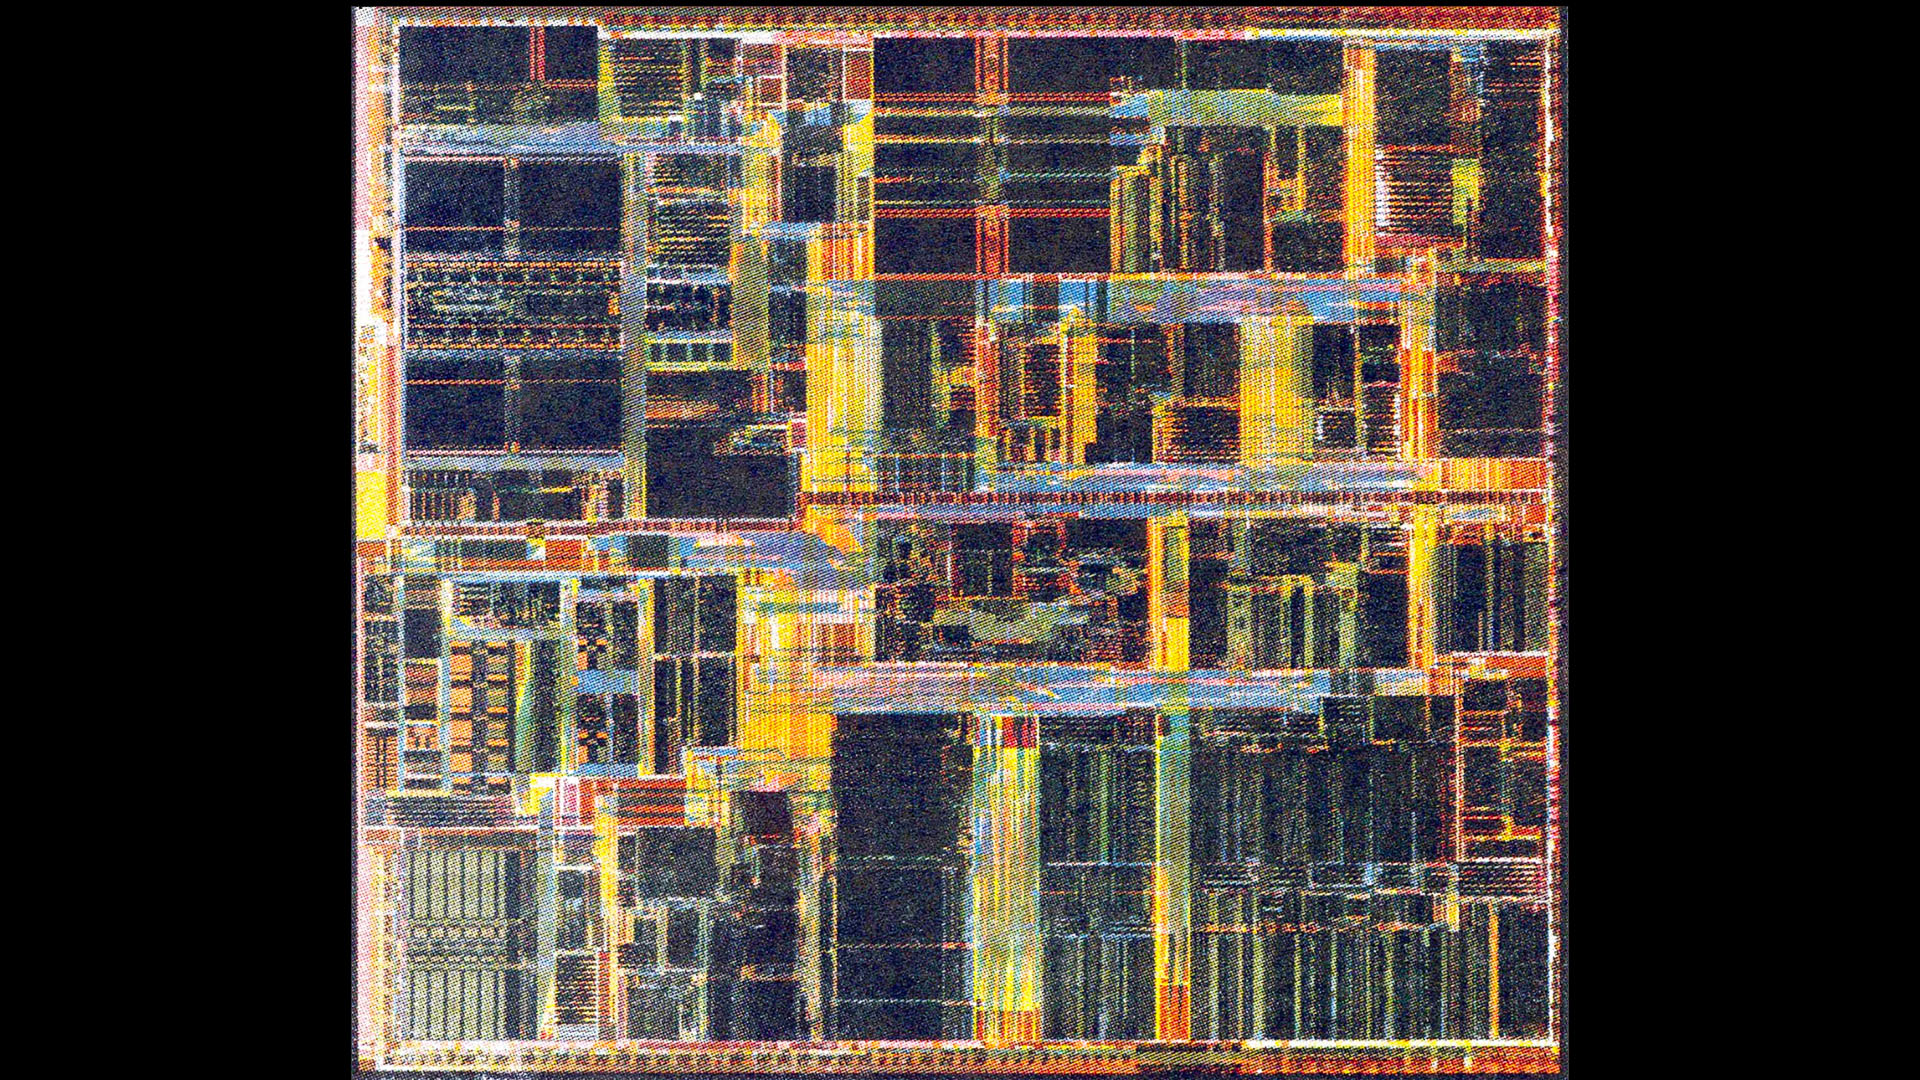 Intel Pentium II die shot